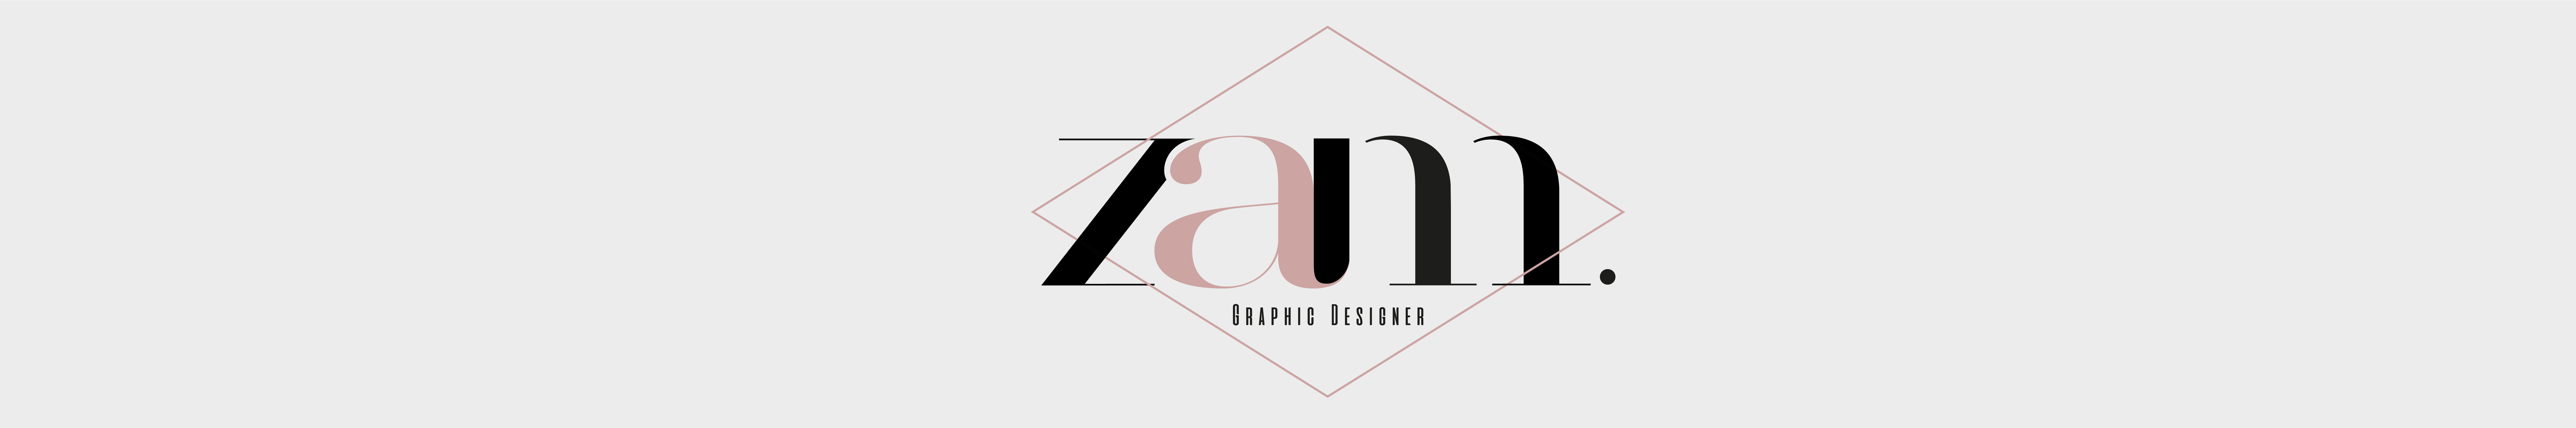 Zam Zambrano's profile banner